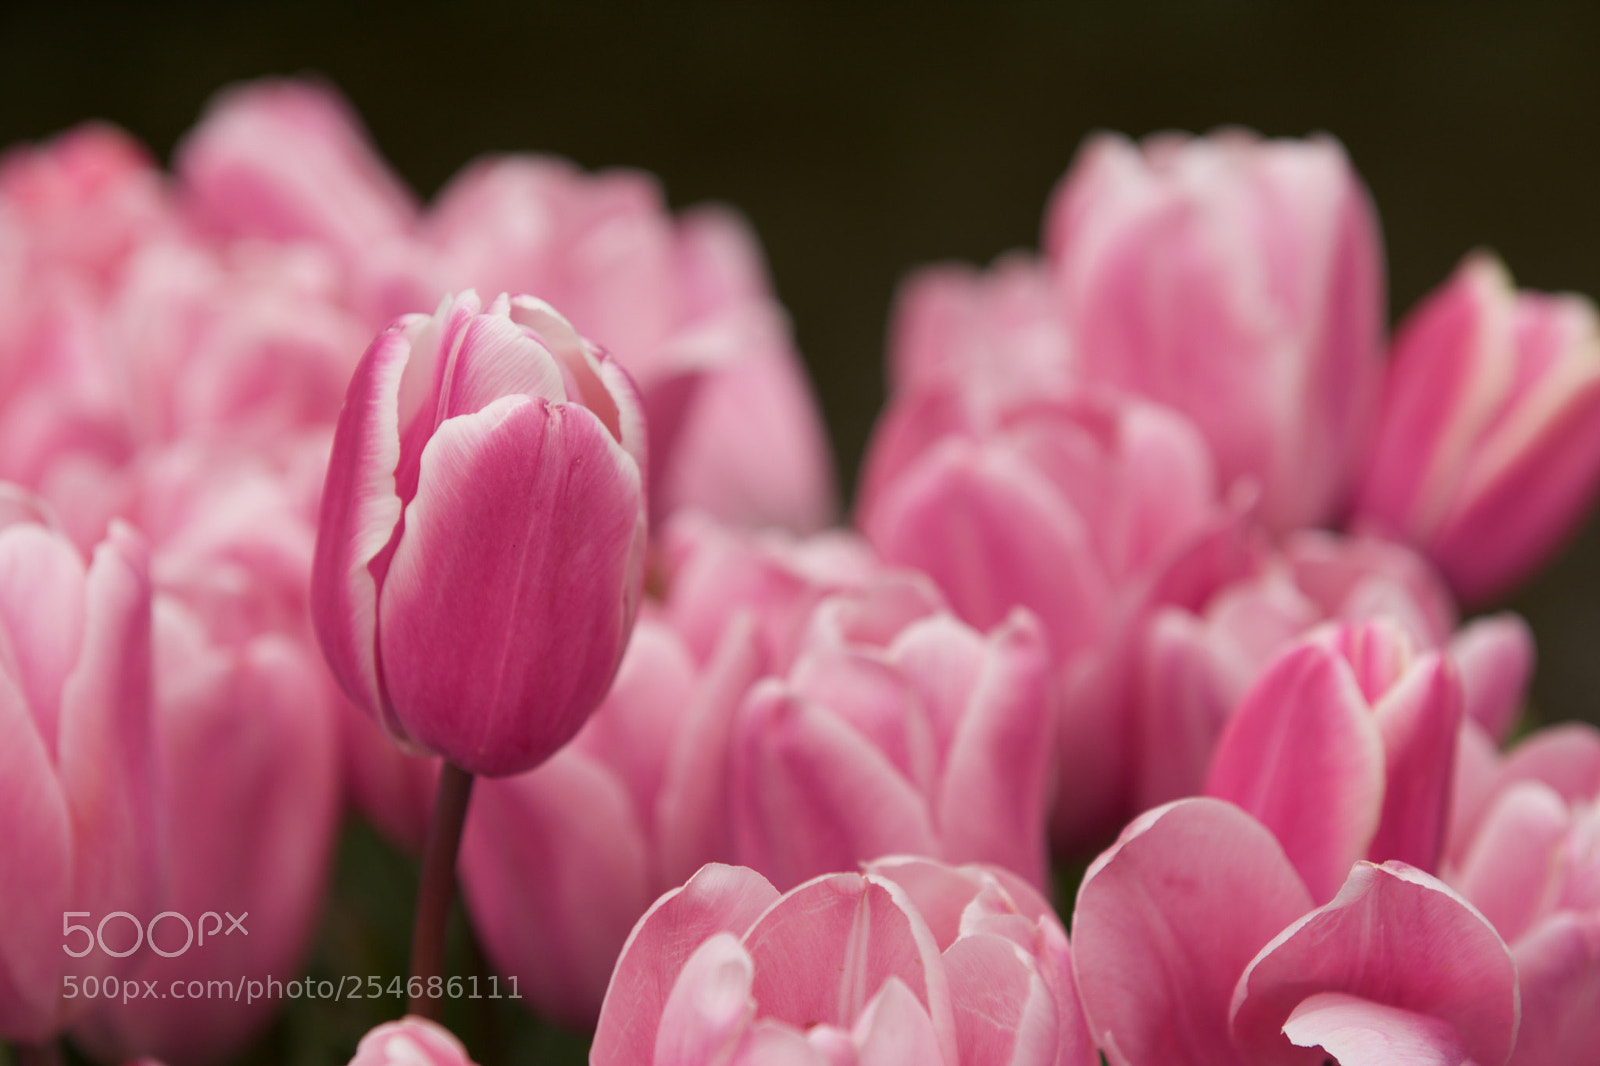 Nikon D7100 sample photo. The tulips garden photography